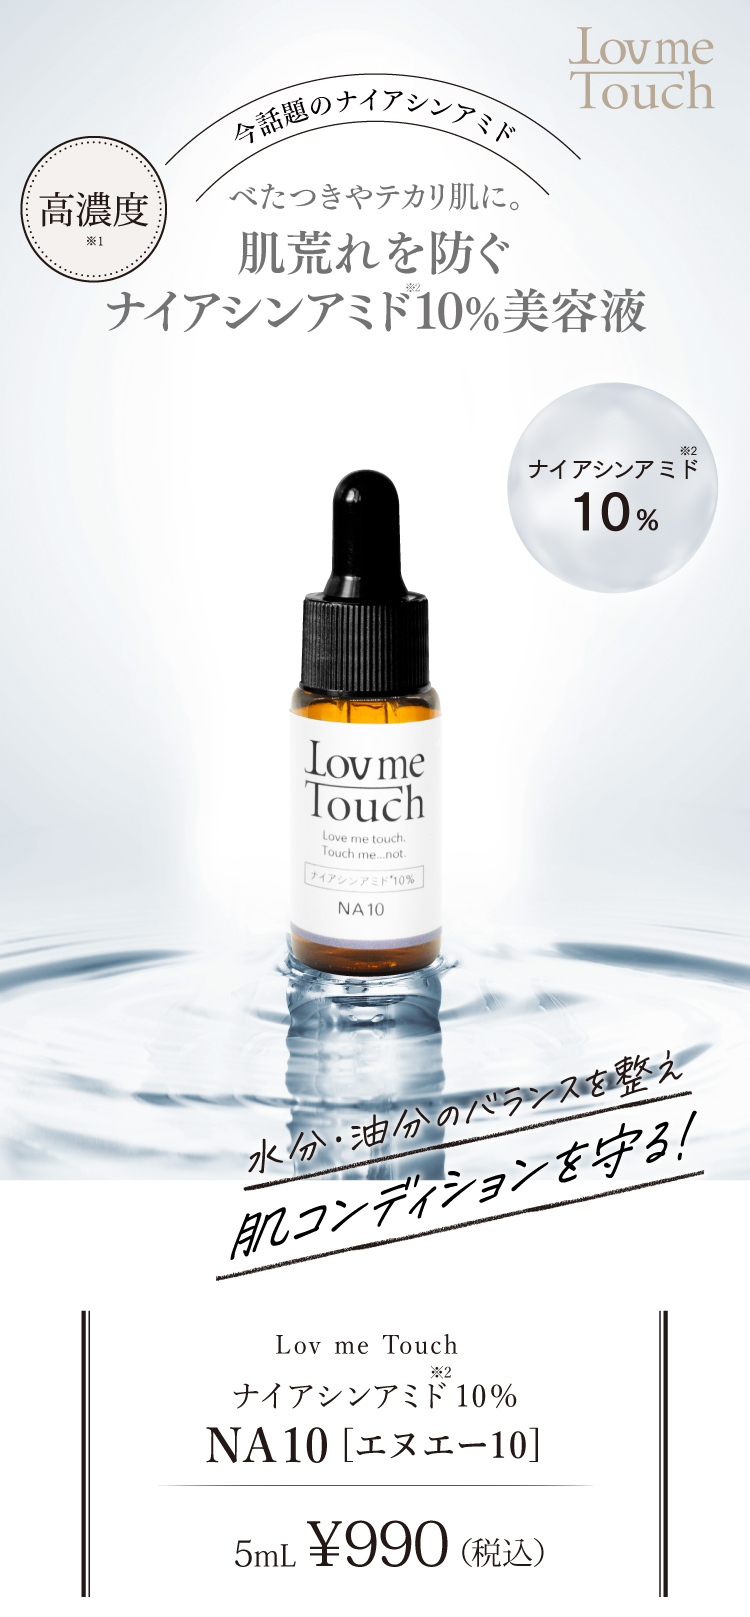 コスメ/美容Lov me Touch ラブミータッチ - www.amsfilling.com